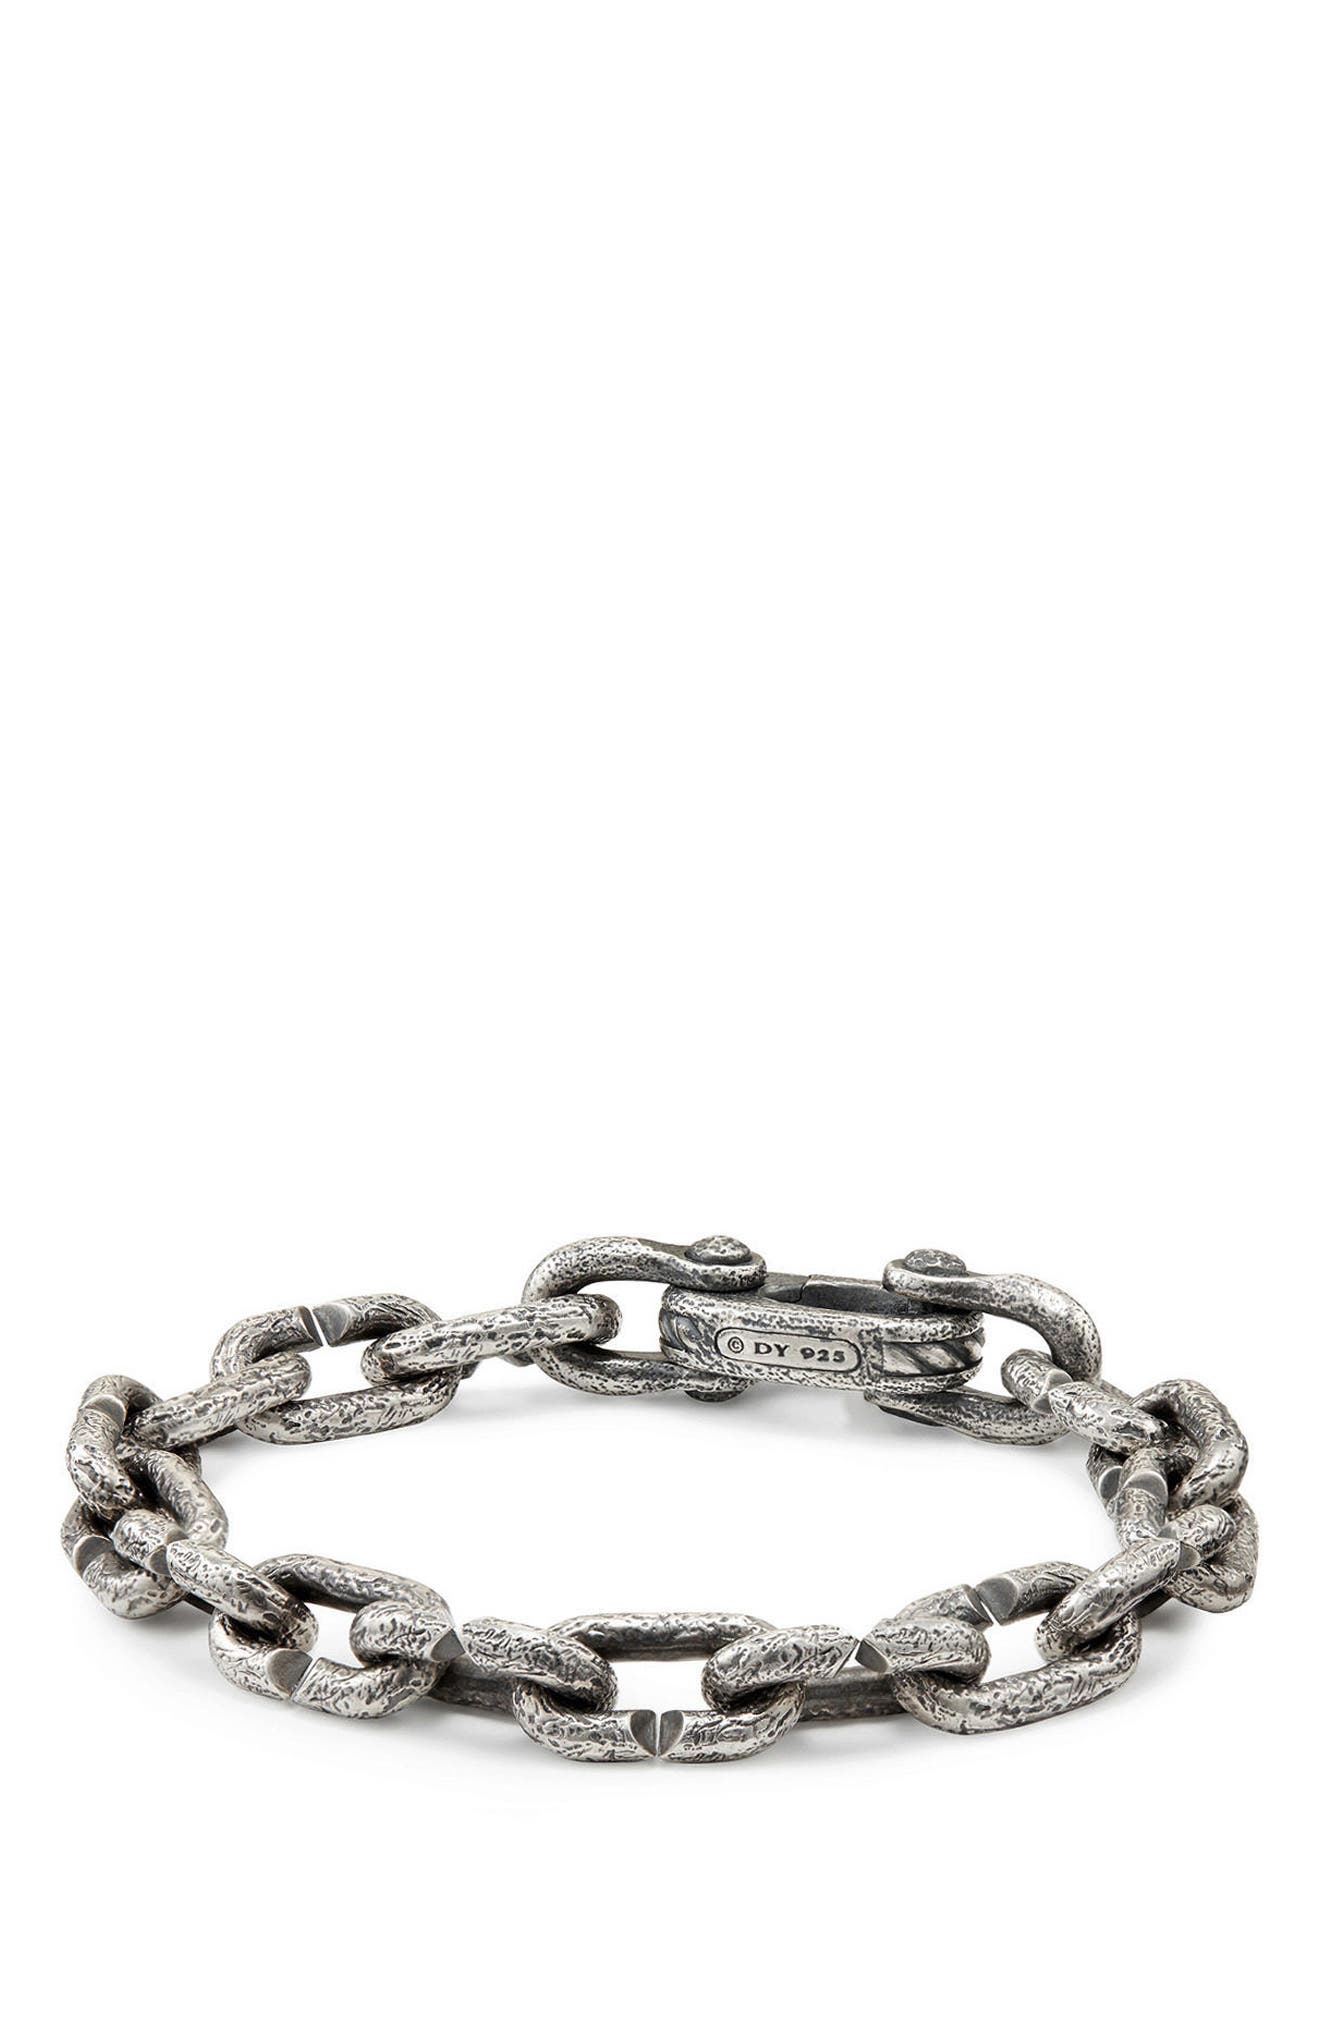 Shipwreck Chain Bracelet